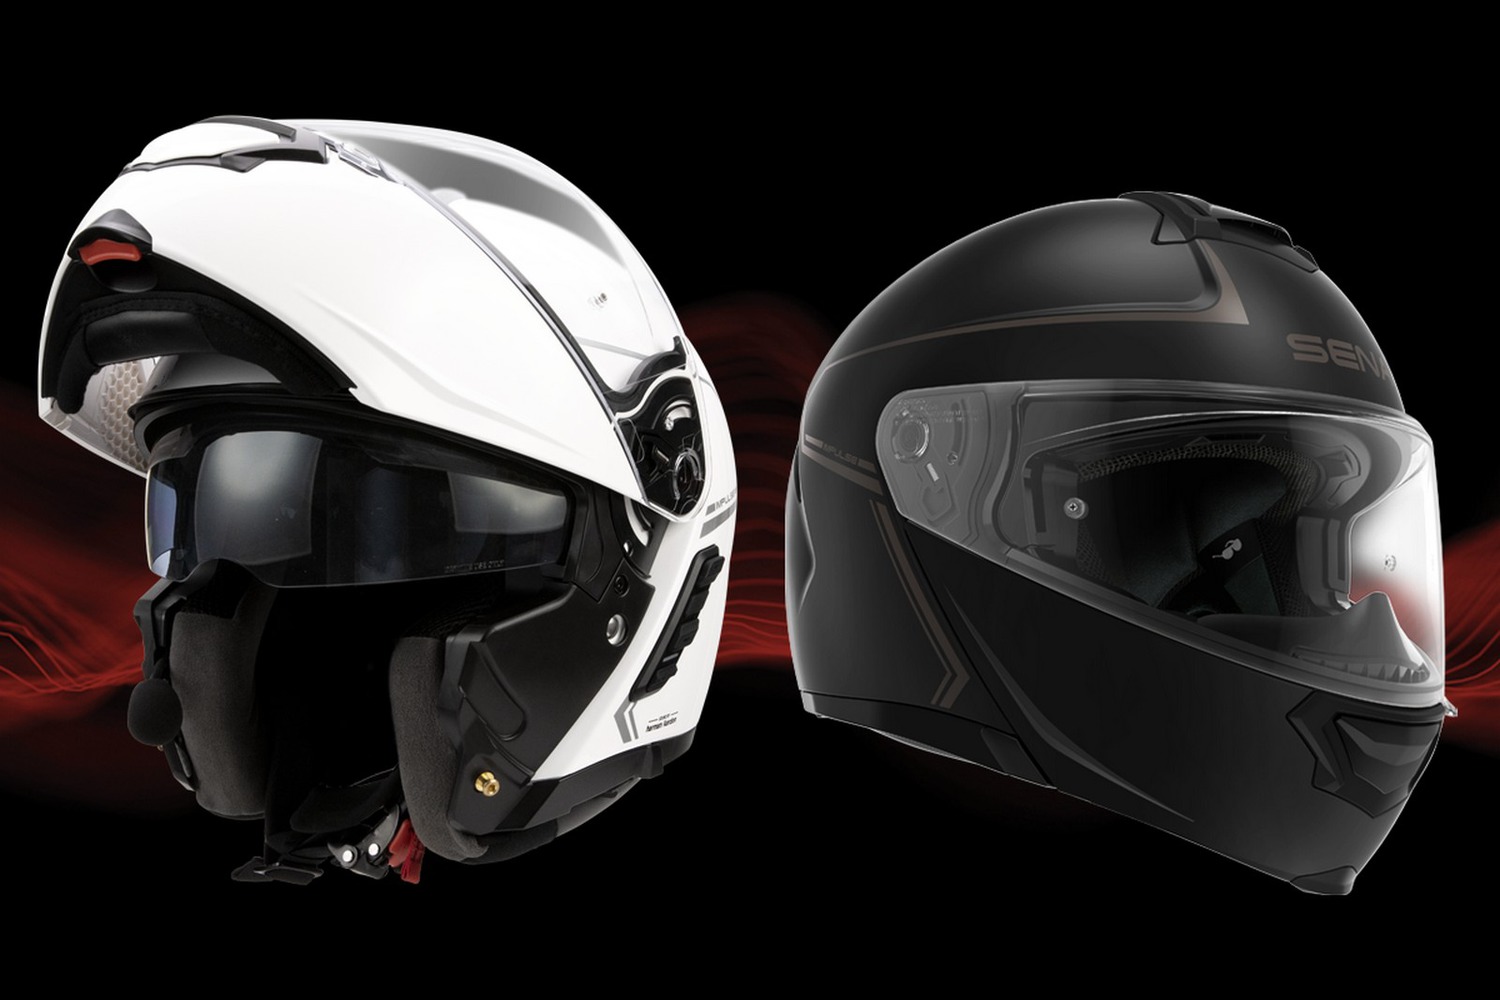 Impulse, Motorcycle Smart Helmet with Mesh Intercom, Flip-up, Matt Black